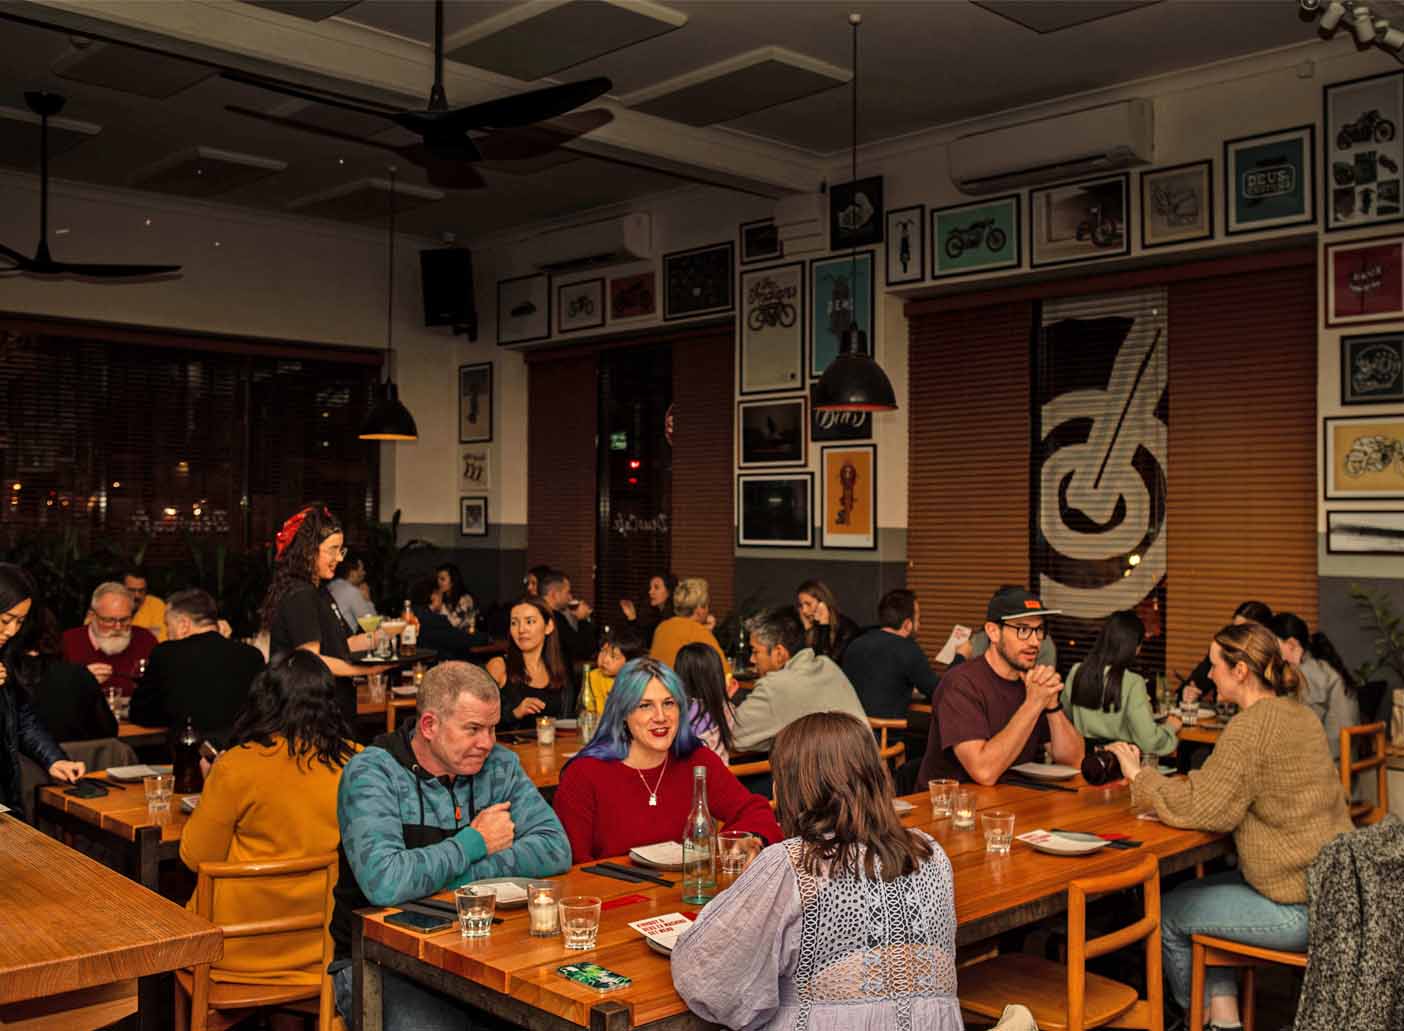 Deus Café <br/> Bohemian Venues For Hire